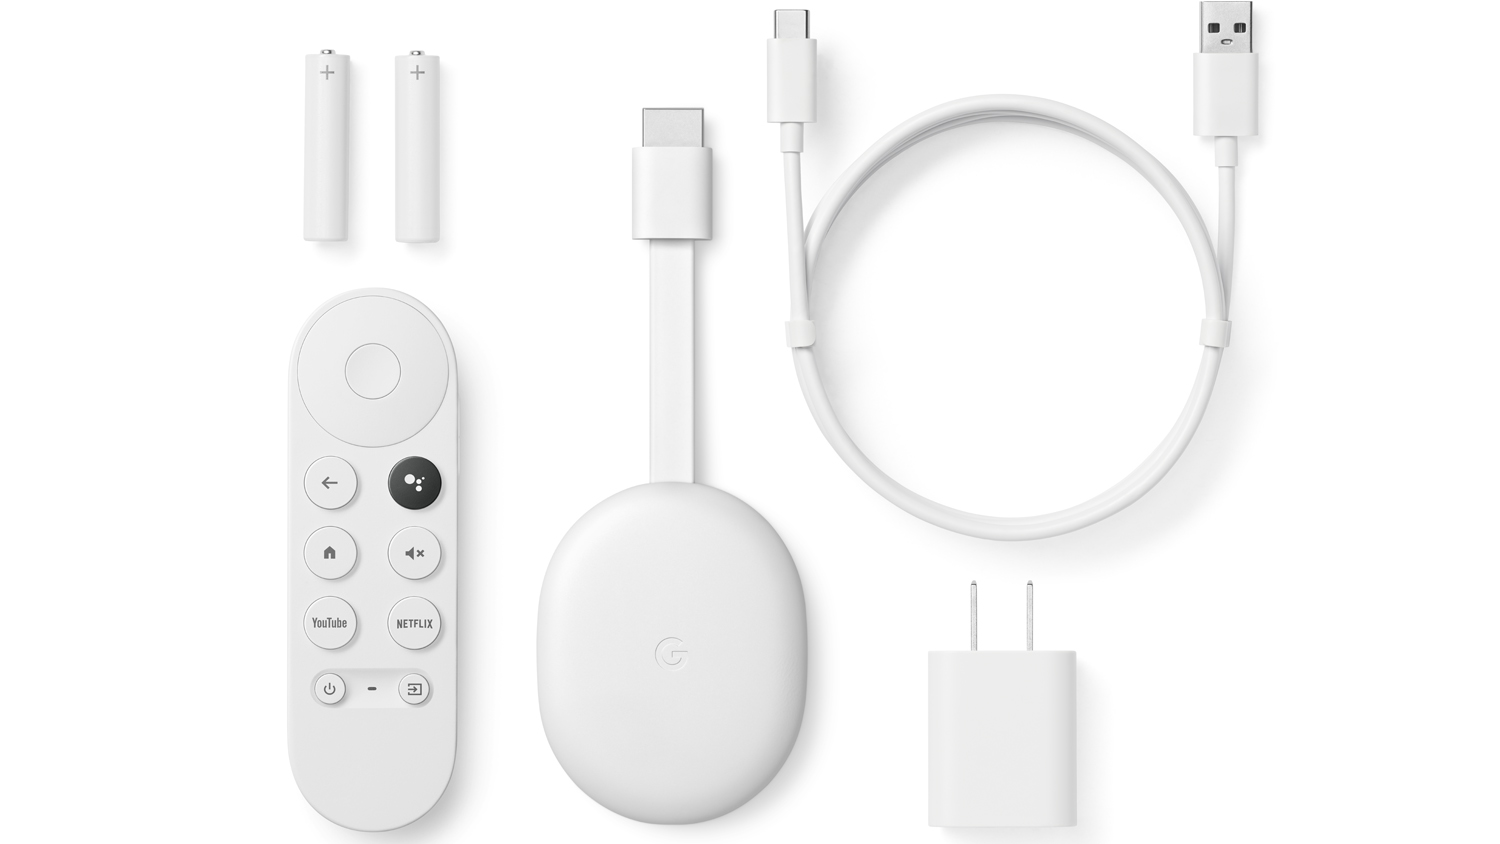 Chromecast Google TV' streamer adds Atmos, voice remote and smarter UI | What Hi-Fi?